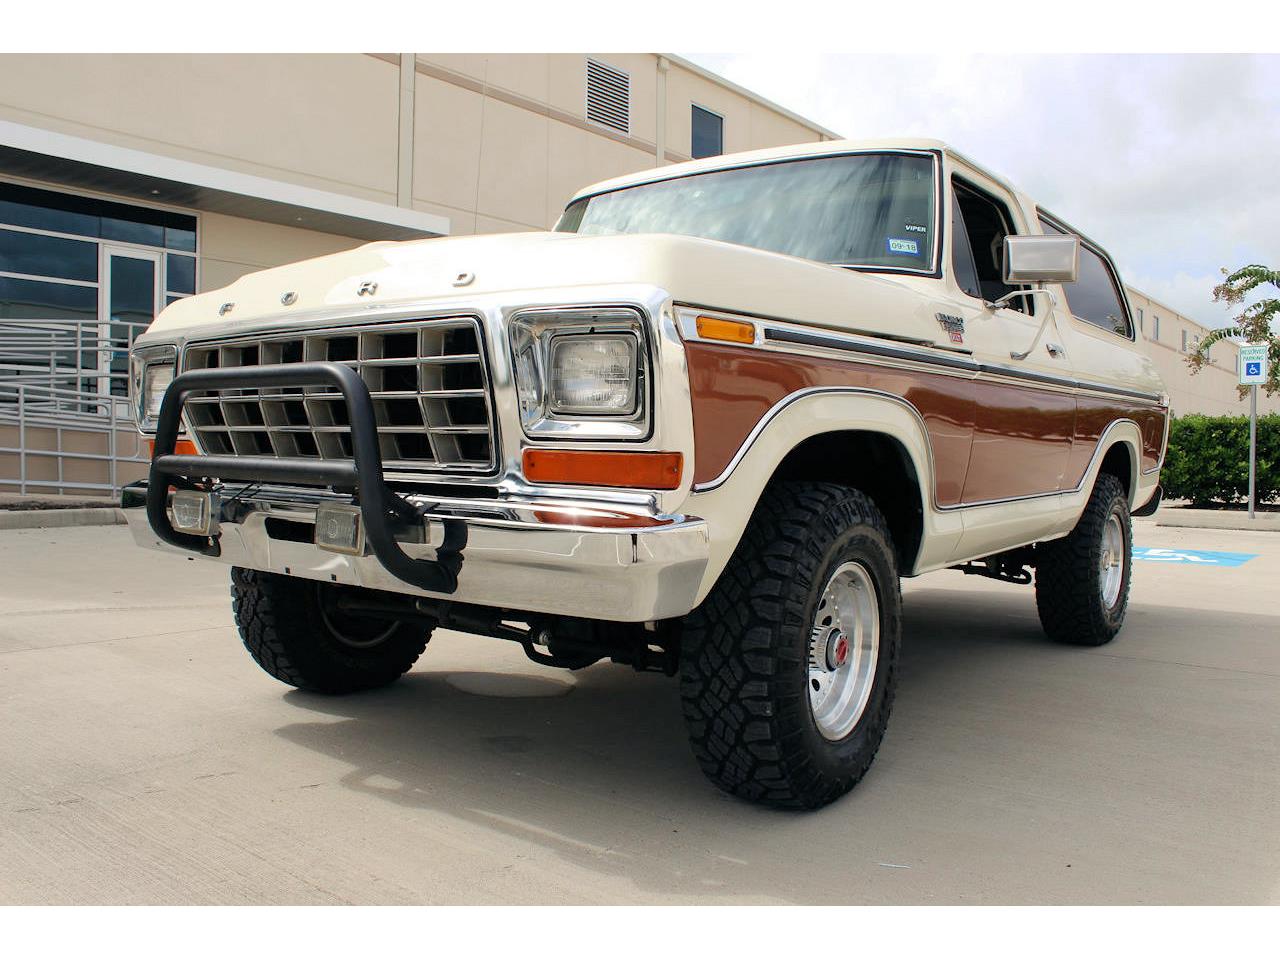 1978 Ford Bronco for Sale | ClassicCars.com | CC-1144297